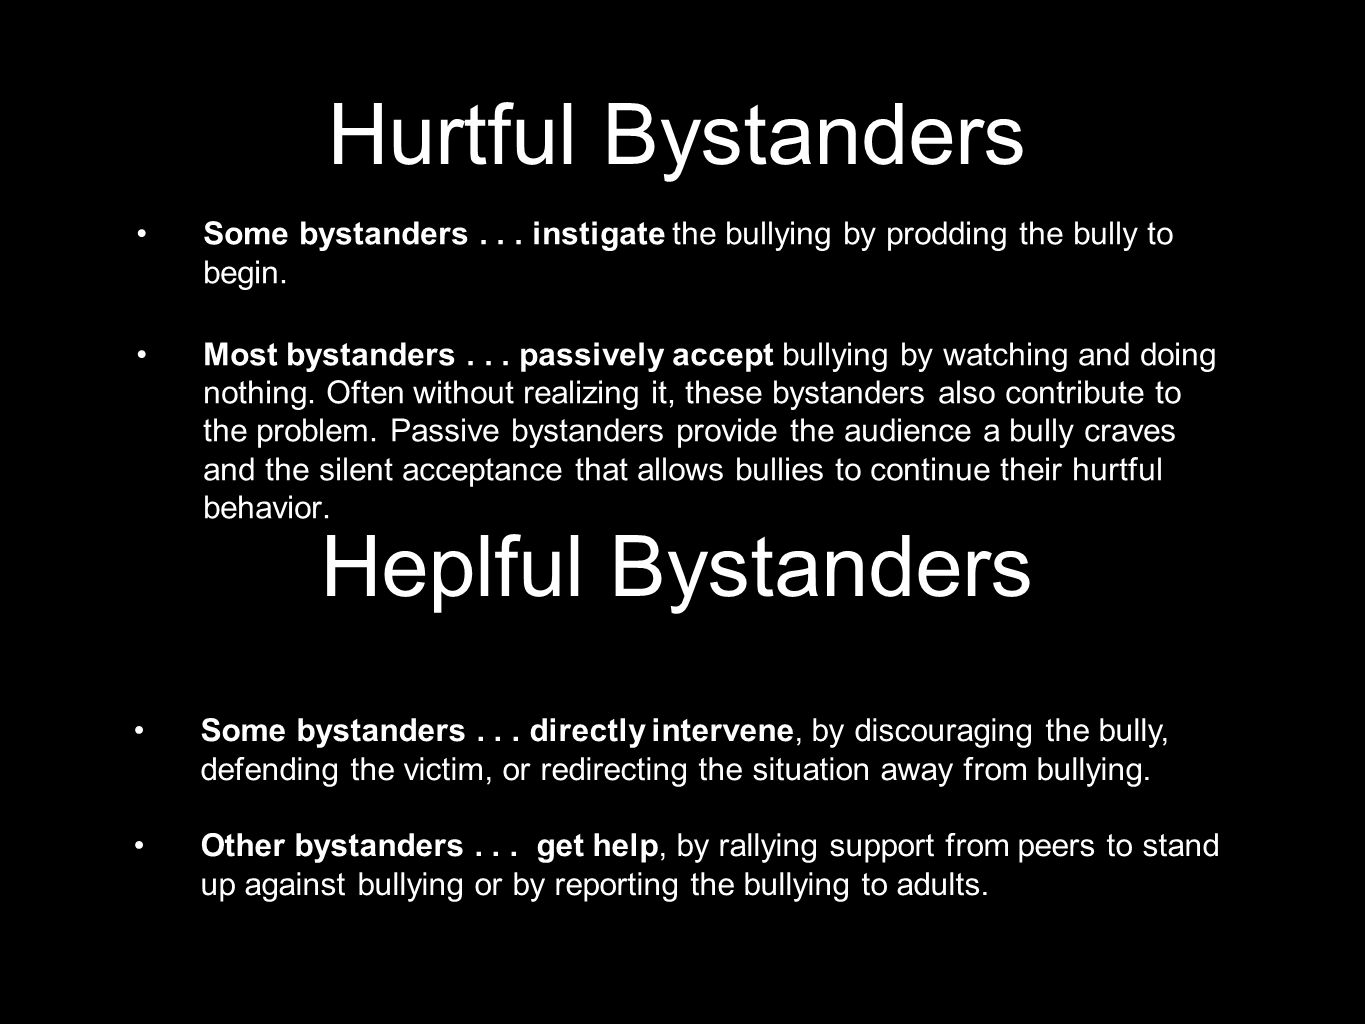 Hurtful Bystanders Heplful Bystanders